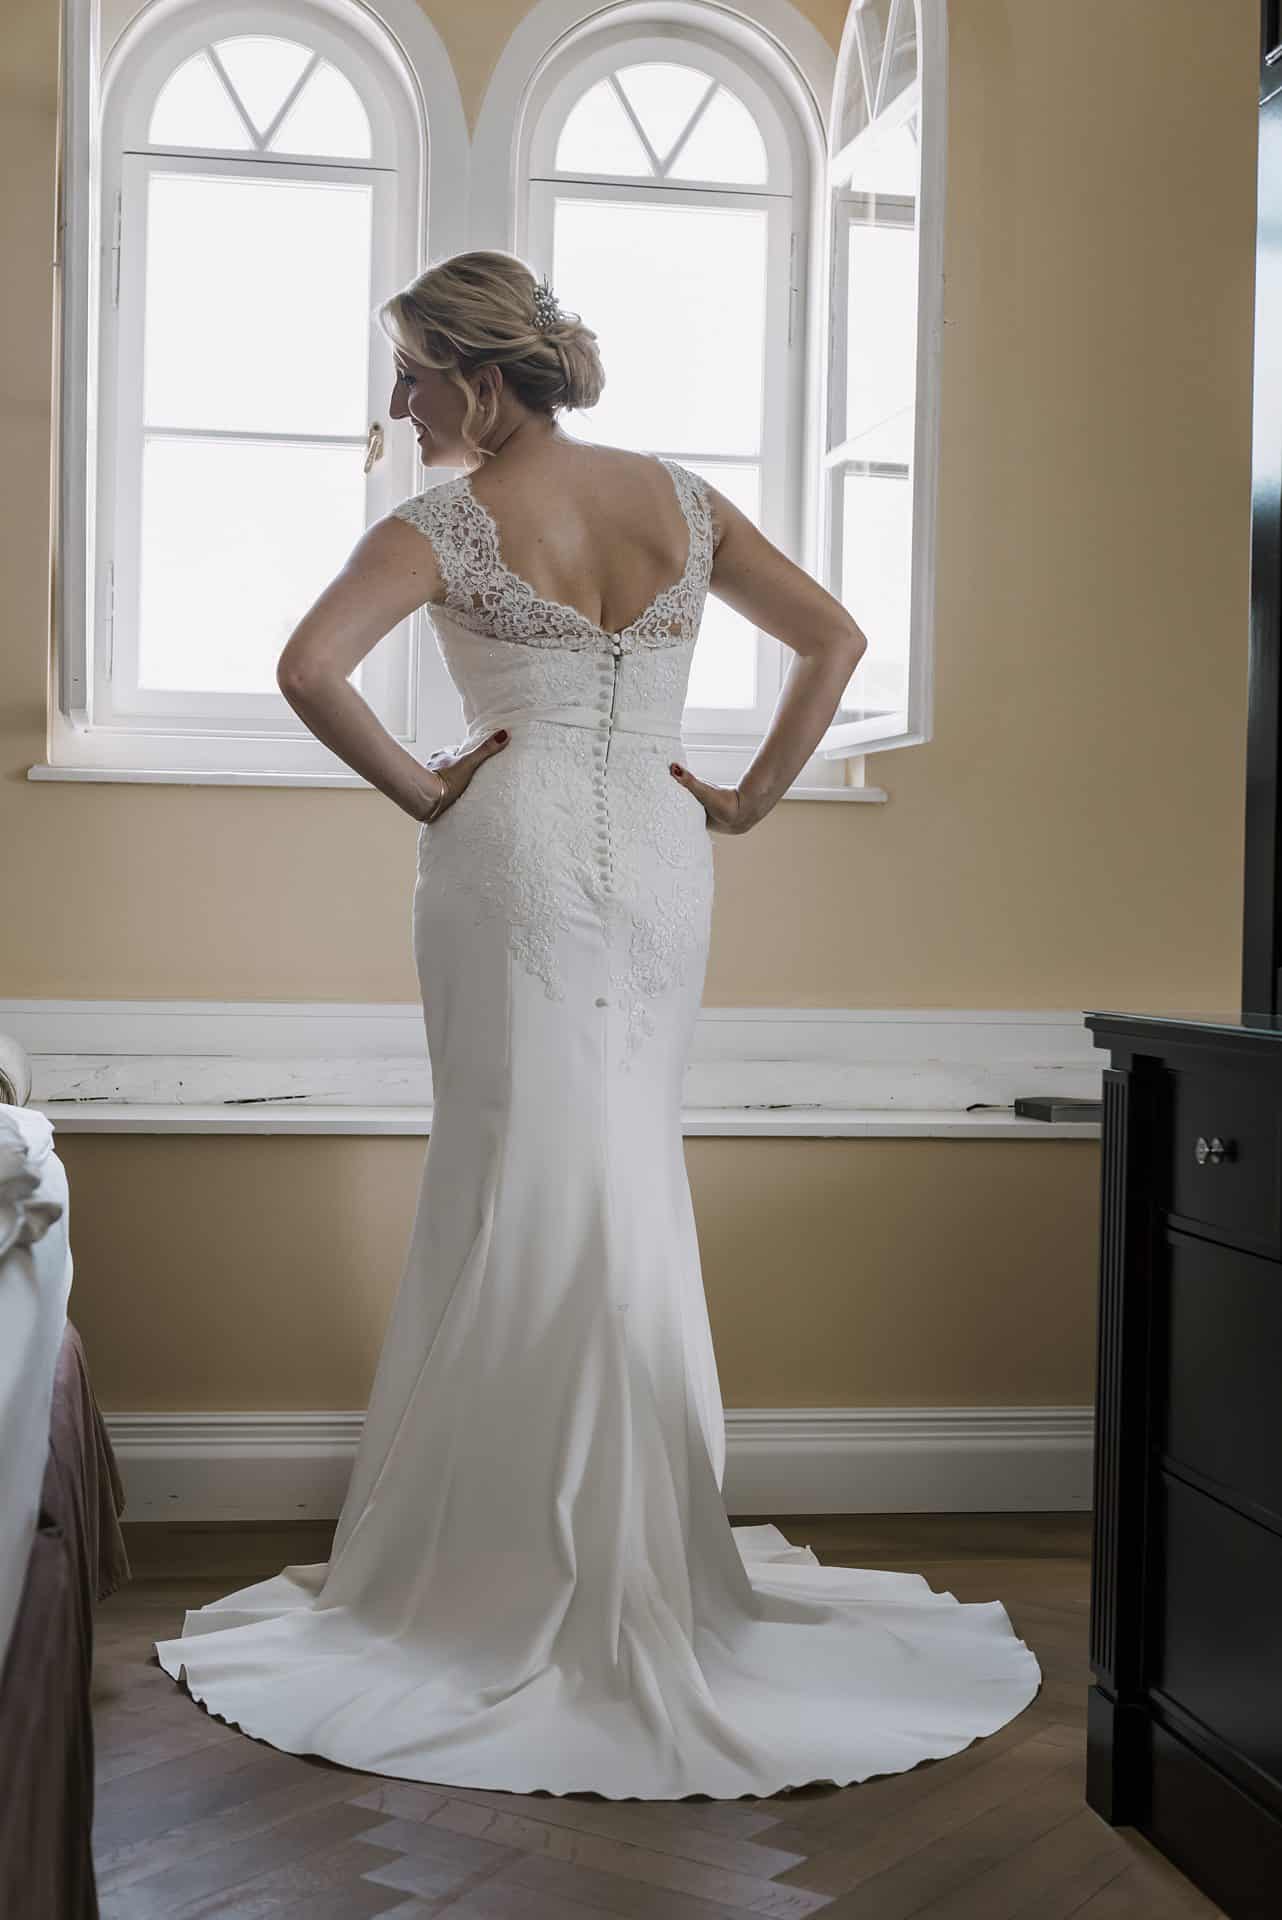 Eine Frau in einem Hochzeitskleid steht vor einem Fenster.